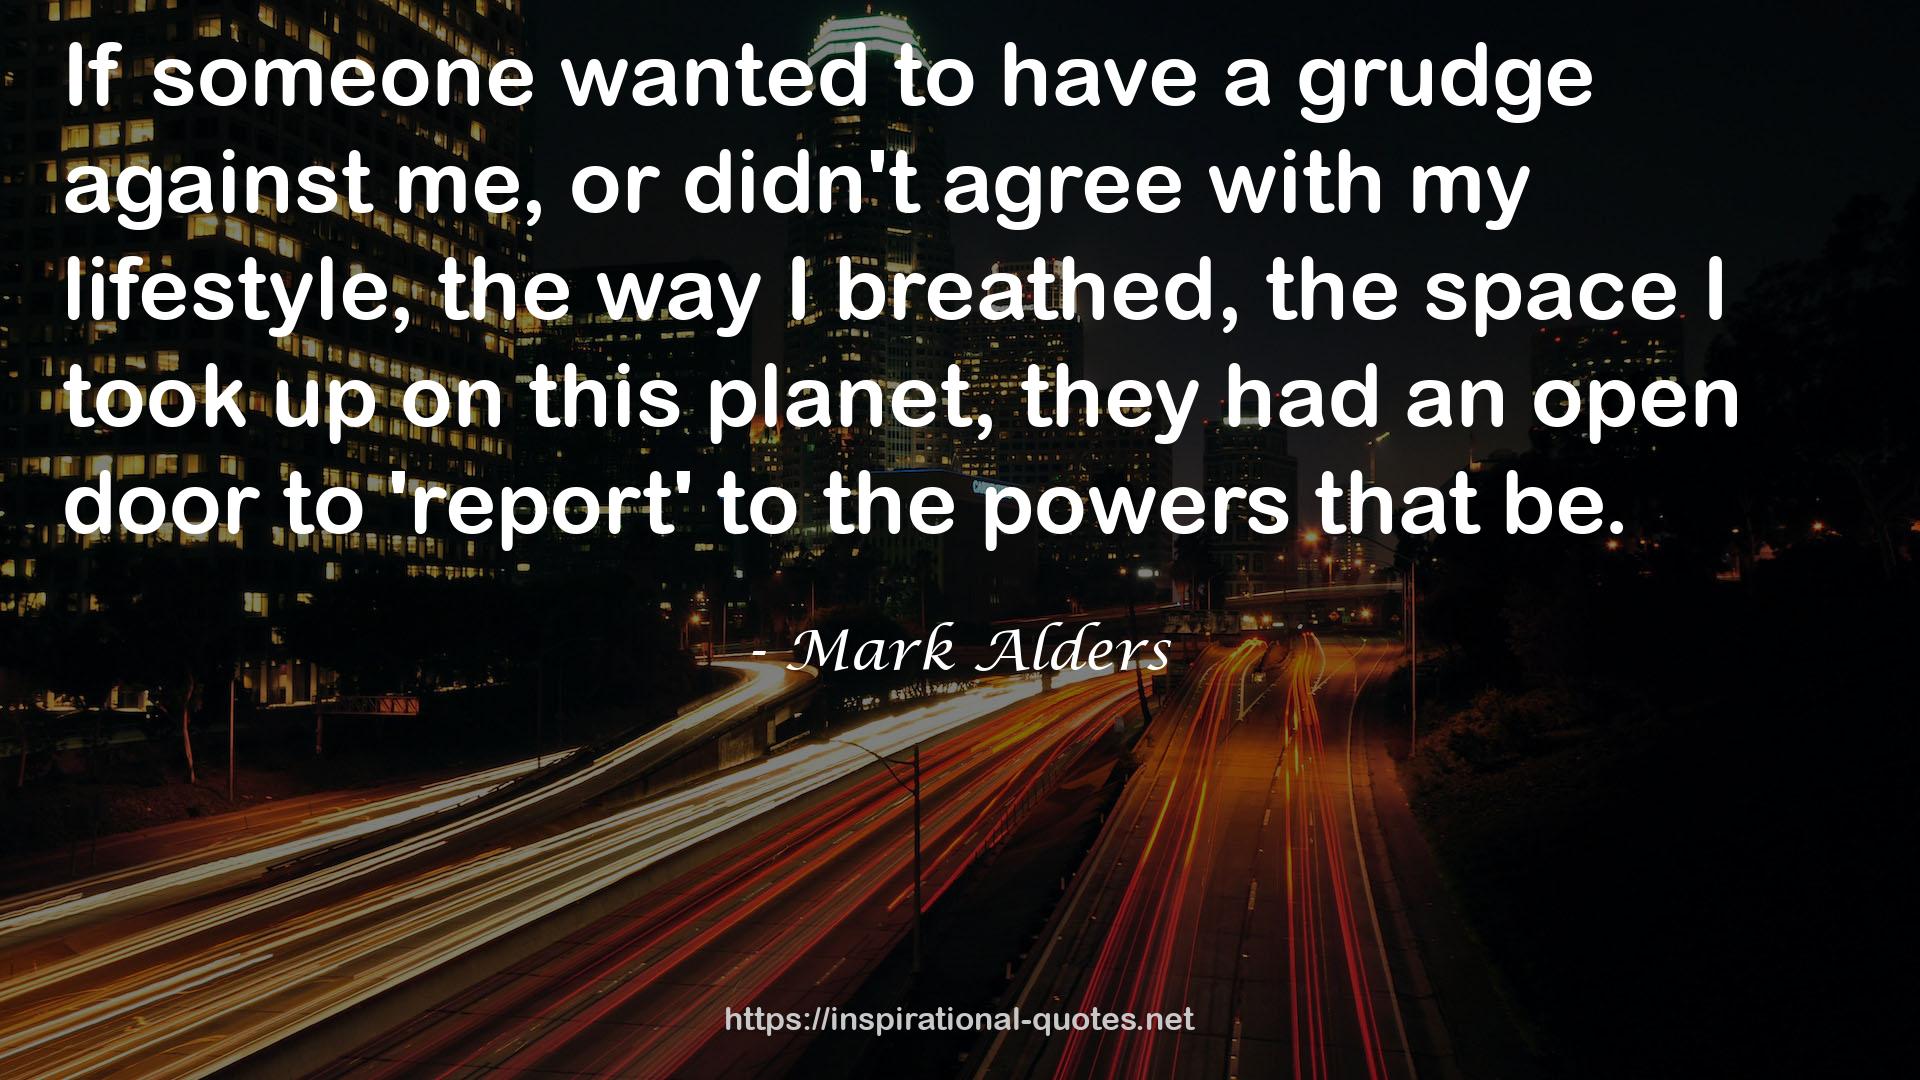 Mark Alders QUOTES